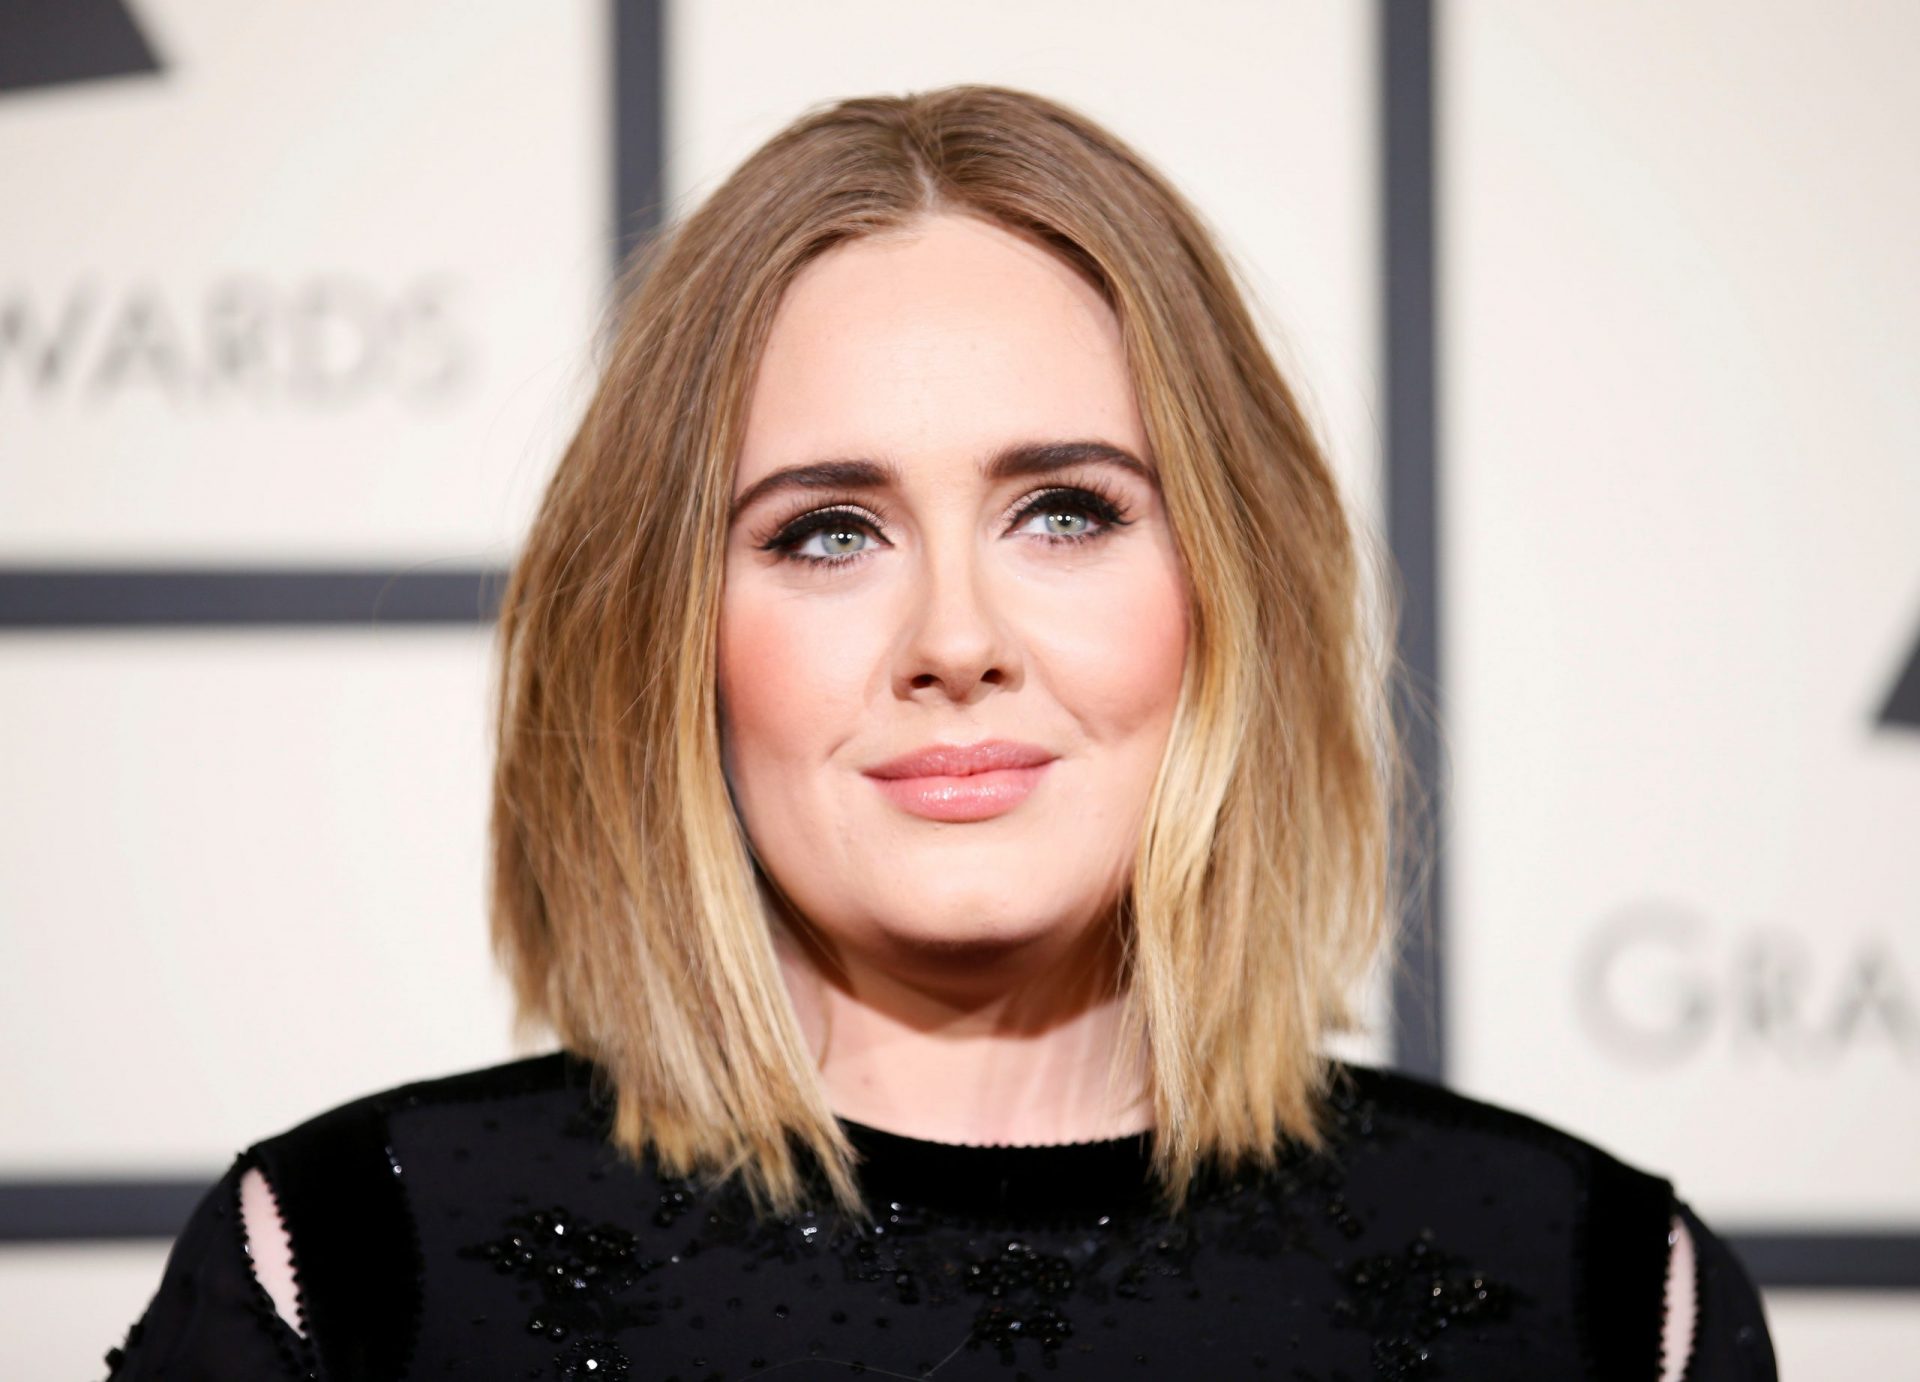 La foto paparazzi de Adele  la hace ver muy diferente a como la conocimos